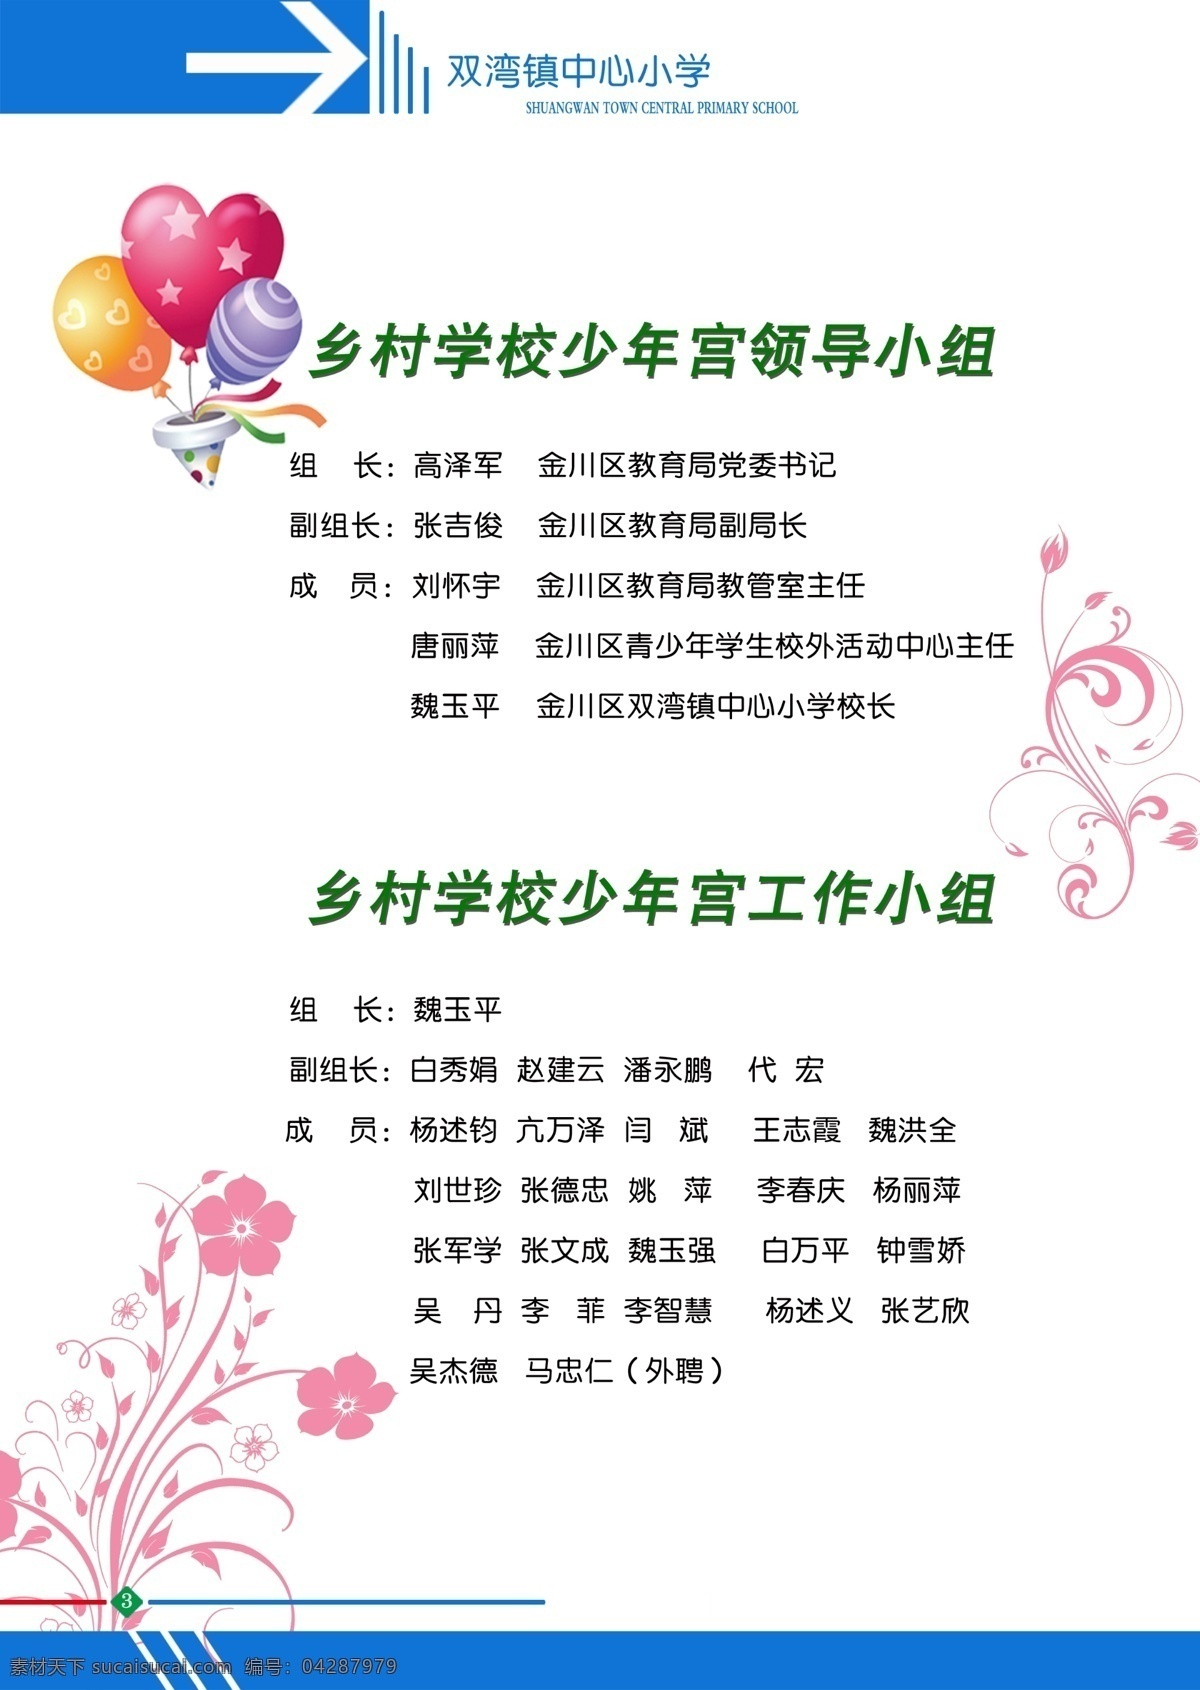 画册内页 人员介绍 分层花纹 彩色气球 乡村少年宫